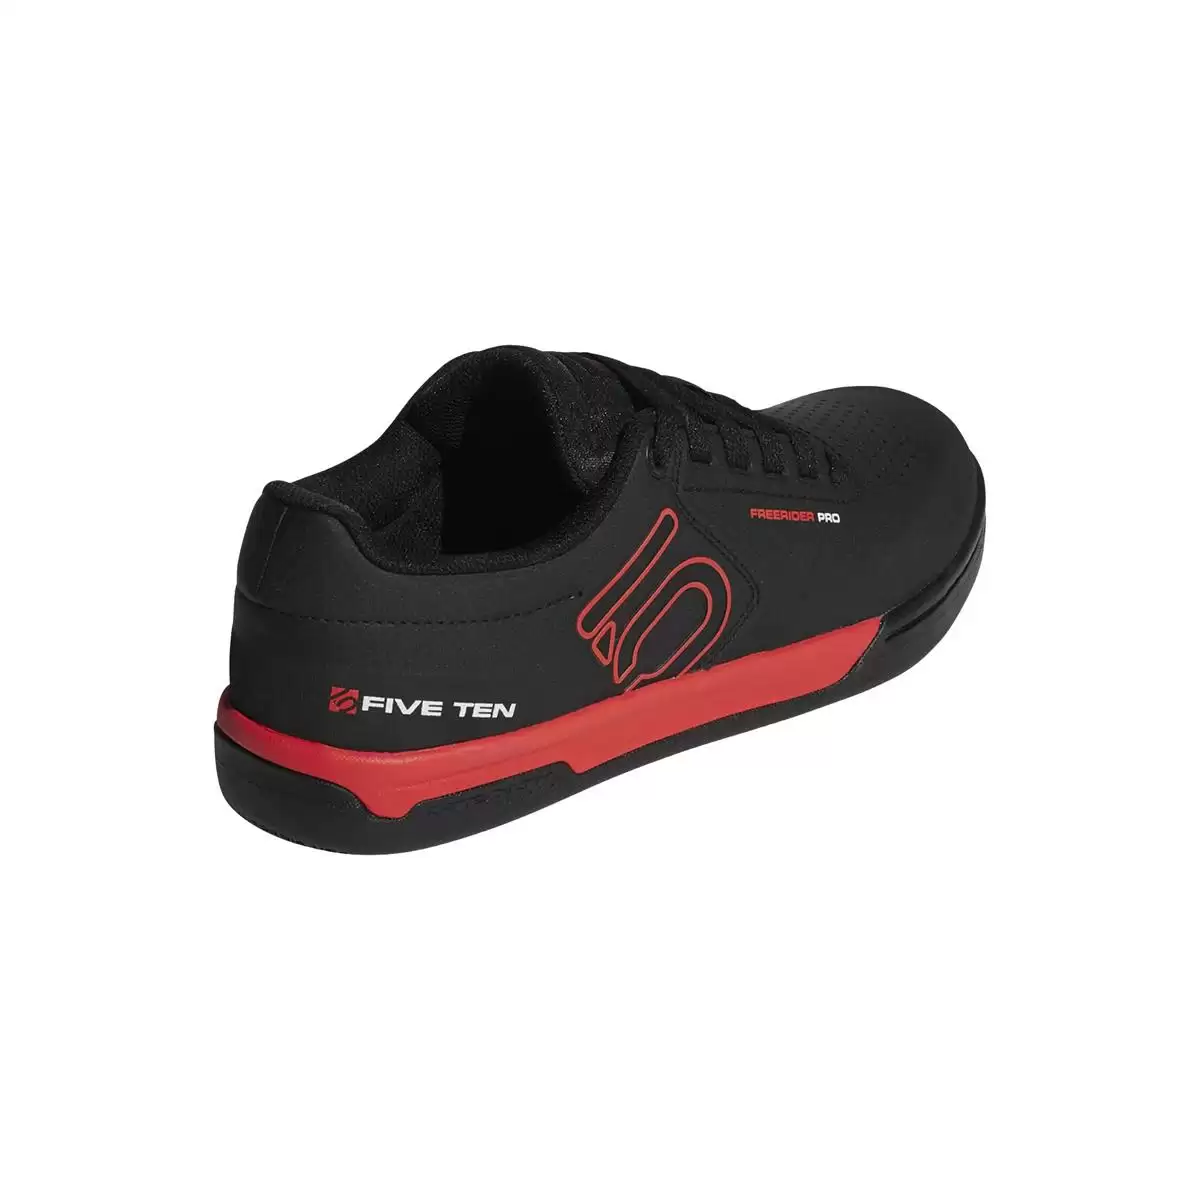 MTB Flache Schuhe Freerider Pro Schwarz/Rot Größe 44 #2